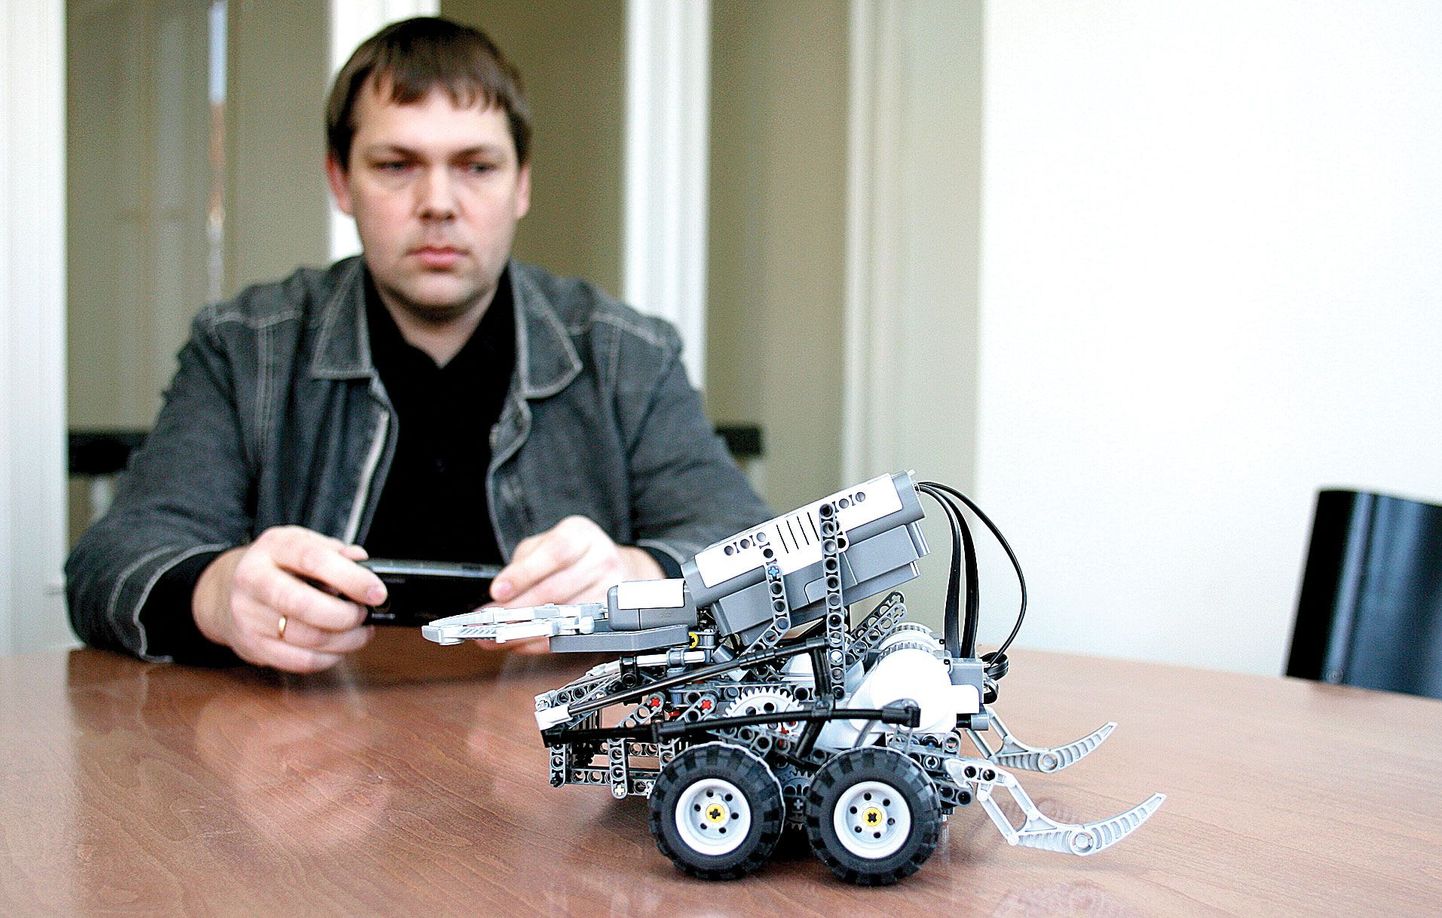 Montrolleri üks meeskonnaliige Asko Seeba näitab, kuidas nutitelefoniga legorobotit juhitakse. Nii nagu robotit siledal laual, võiks mobiiltelefon edaspidi kas või muruniidukit mööda koduõuesid ringi sõidutada.